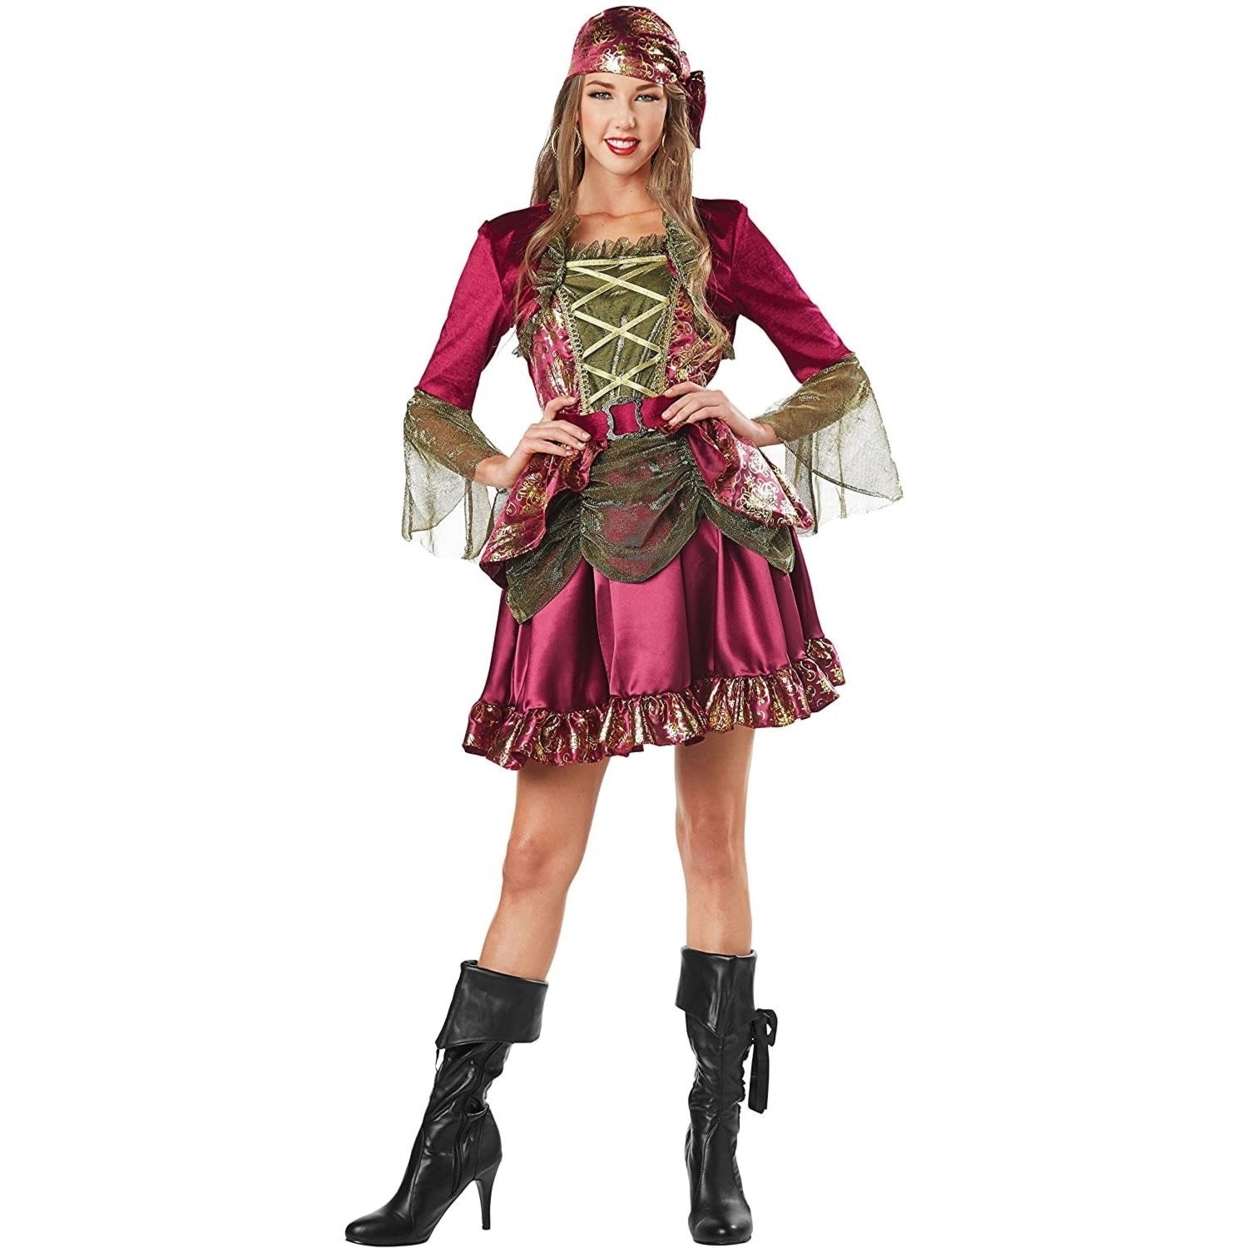 Lady Pirate She-Pirate Size M 8/10 Womens Costume Dress Seasons